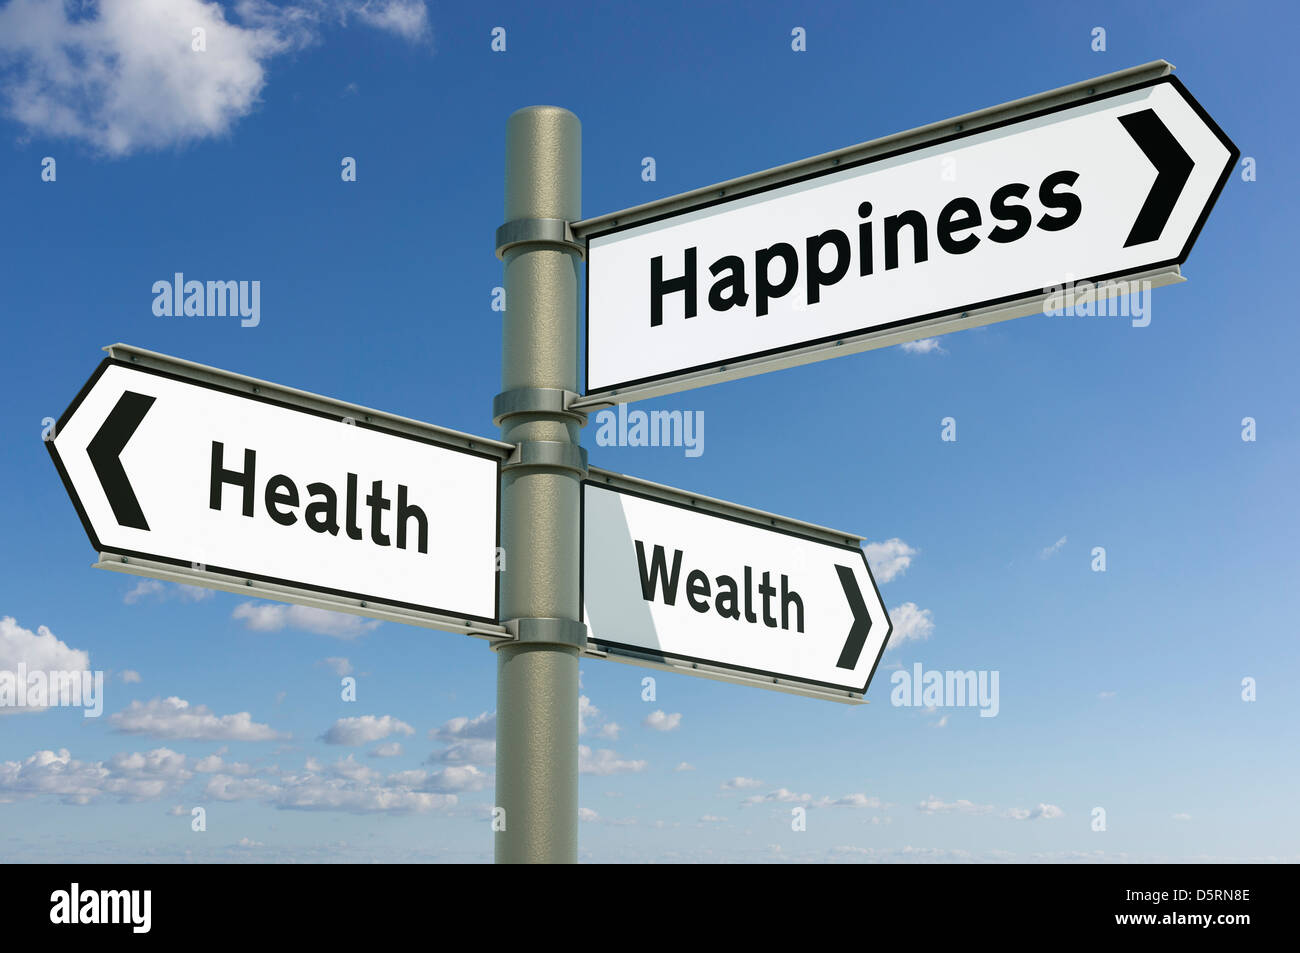 La santé, la richesse, le bonheur - décisions future orientation choix concept Banque D'Images